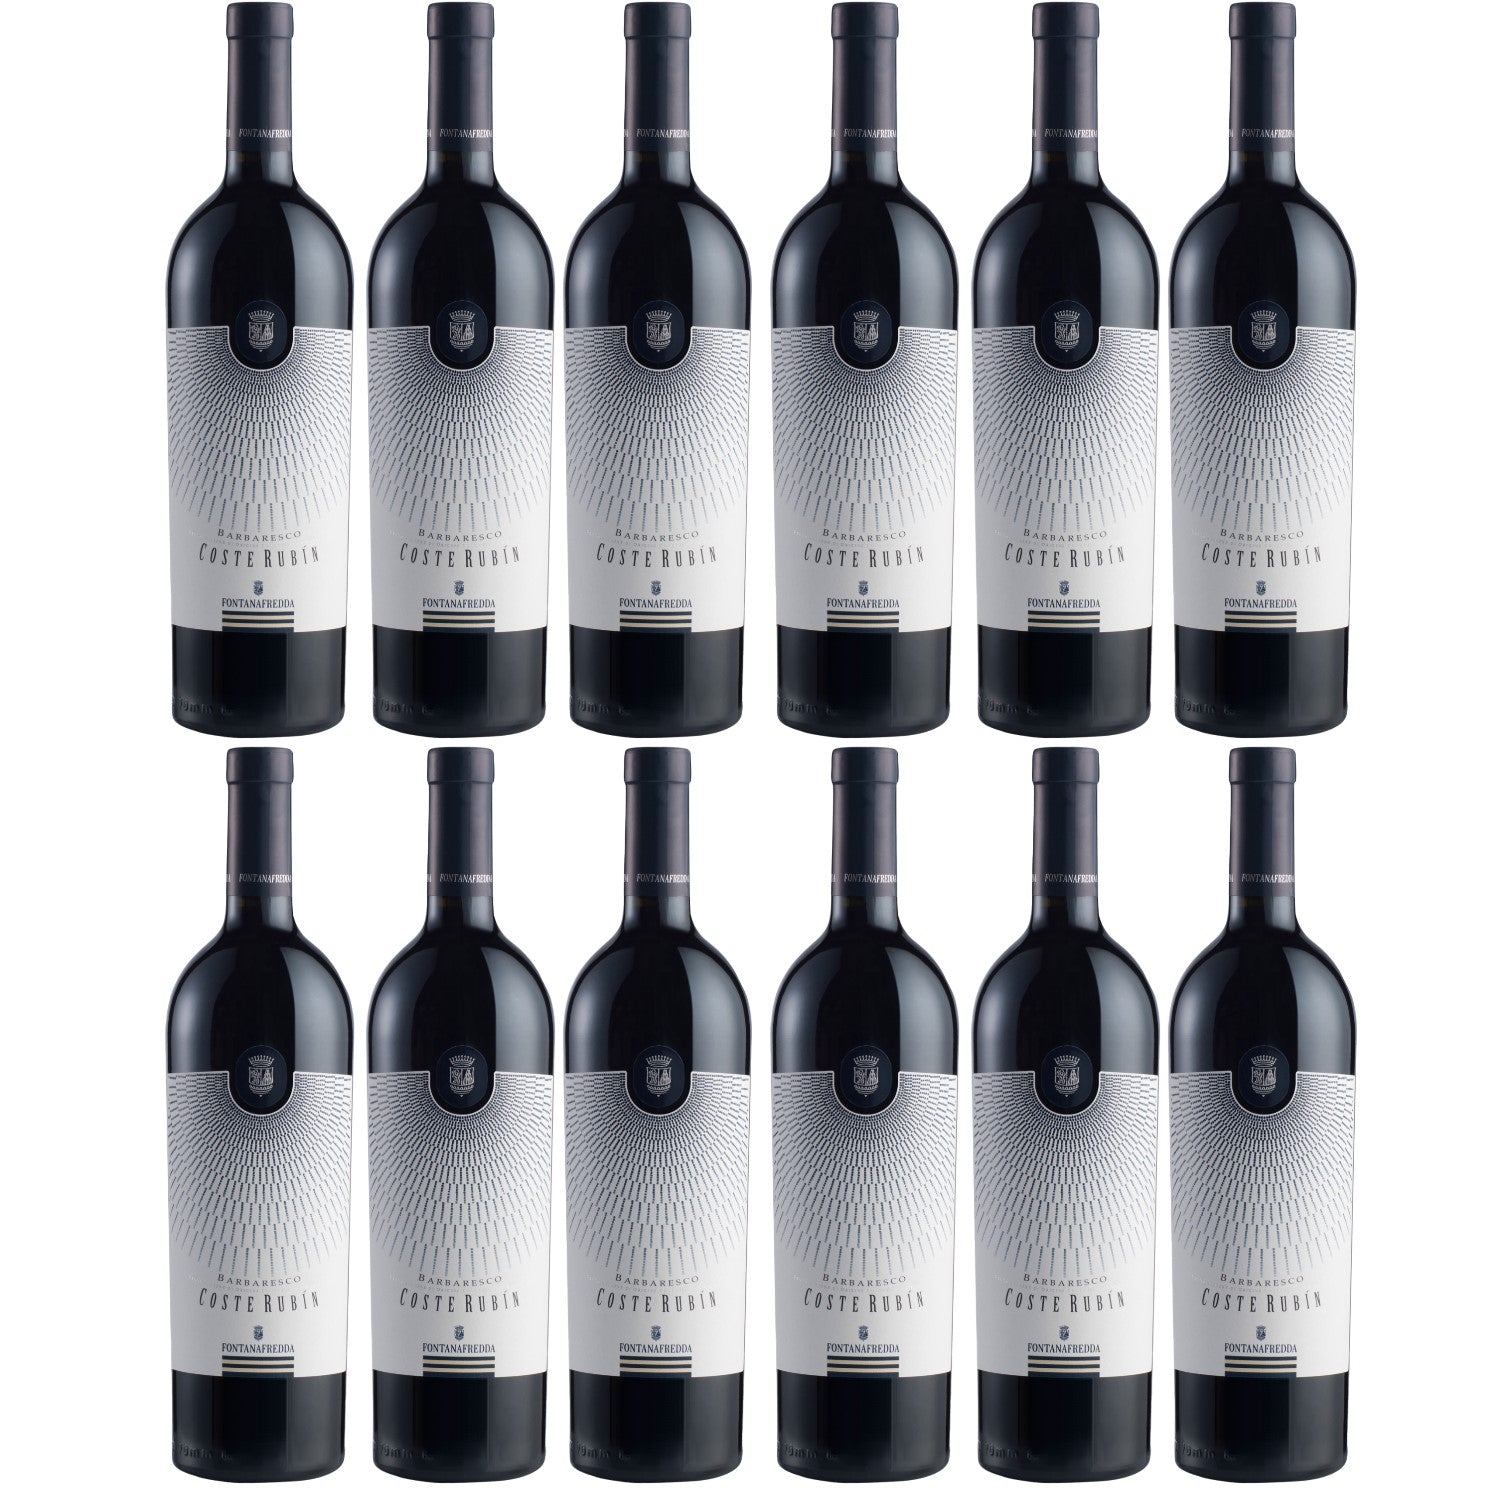 Fontanafredda Coste Rubin Barbaresco DOCG Rotwein Wein trocken Italien (12 x 0.75l) - Versanel -